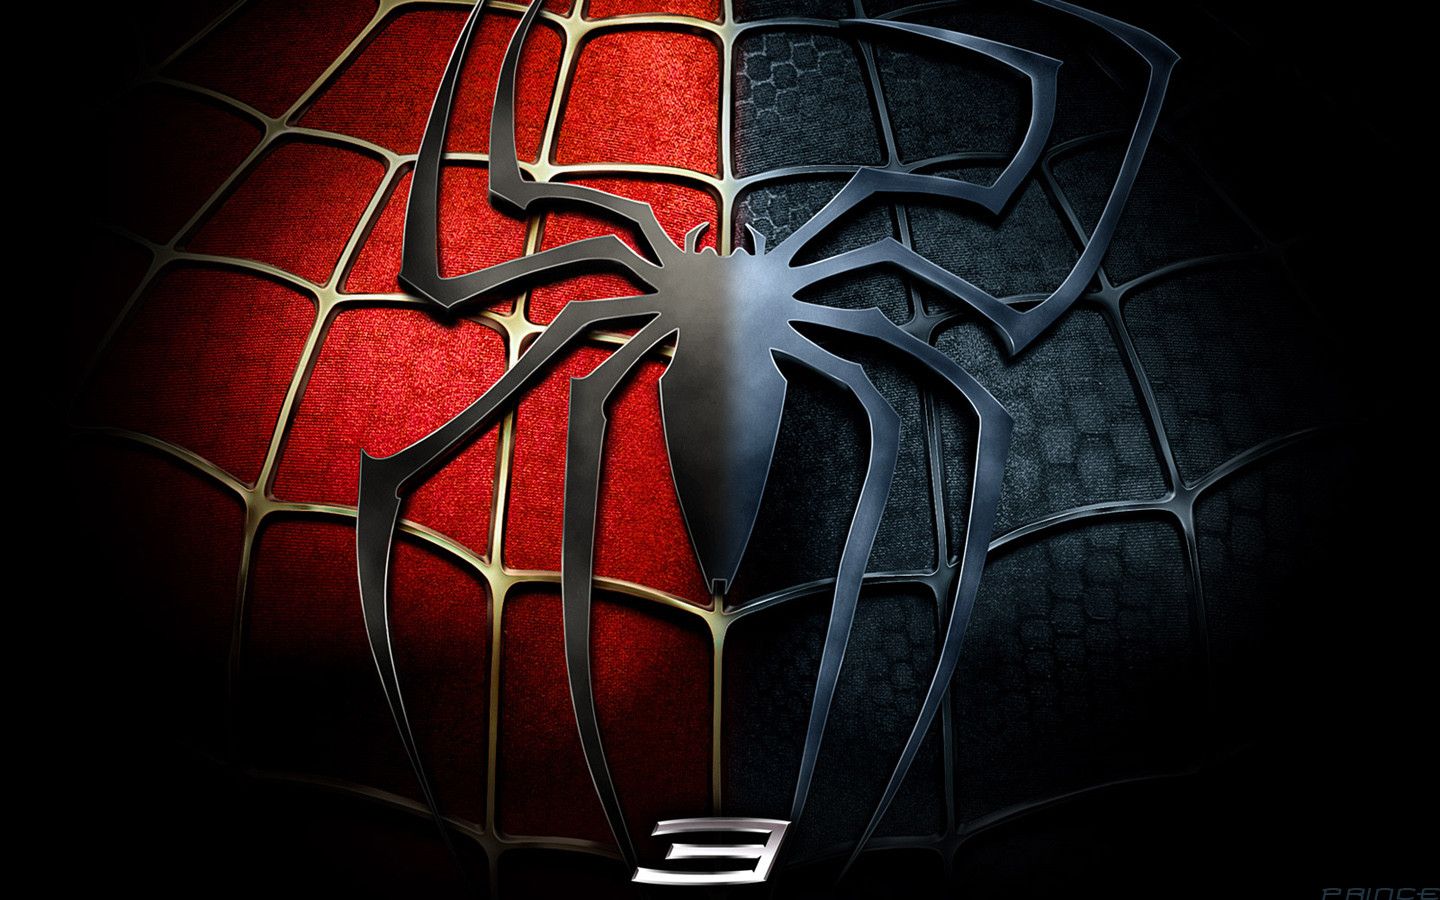 Hình nền người nhện 3d: Thưởng thức hình nền người nhện 3d, bạn sẽ có cảm giác như được vật lộn, leo trèo trong thành phố New York giống như Peter Parker. Cùng trải nghiệm cảm giác phiêu lưu không thể tả được với hình nền người nhện 3d đầy màu sắc và sinh động.